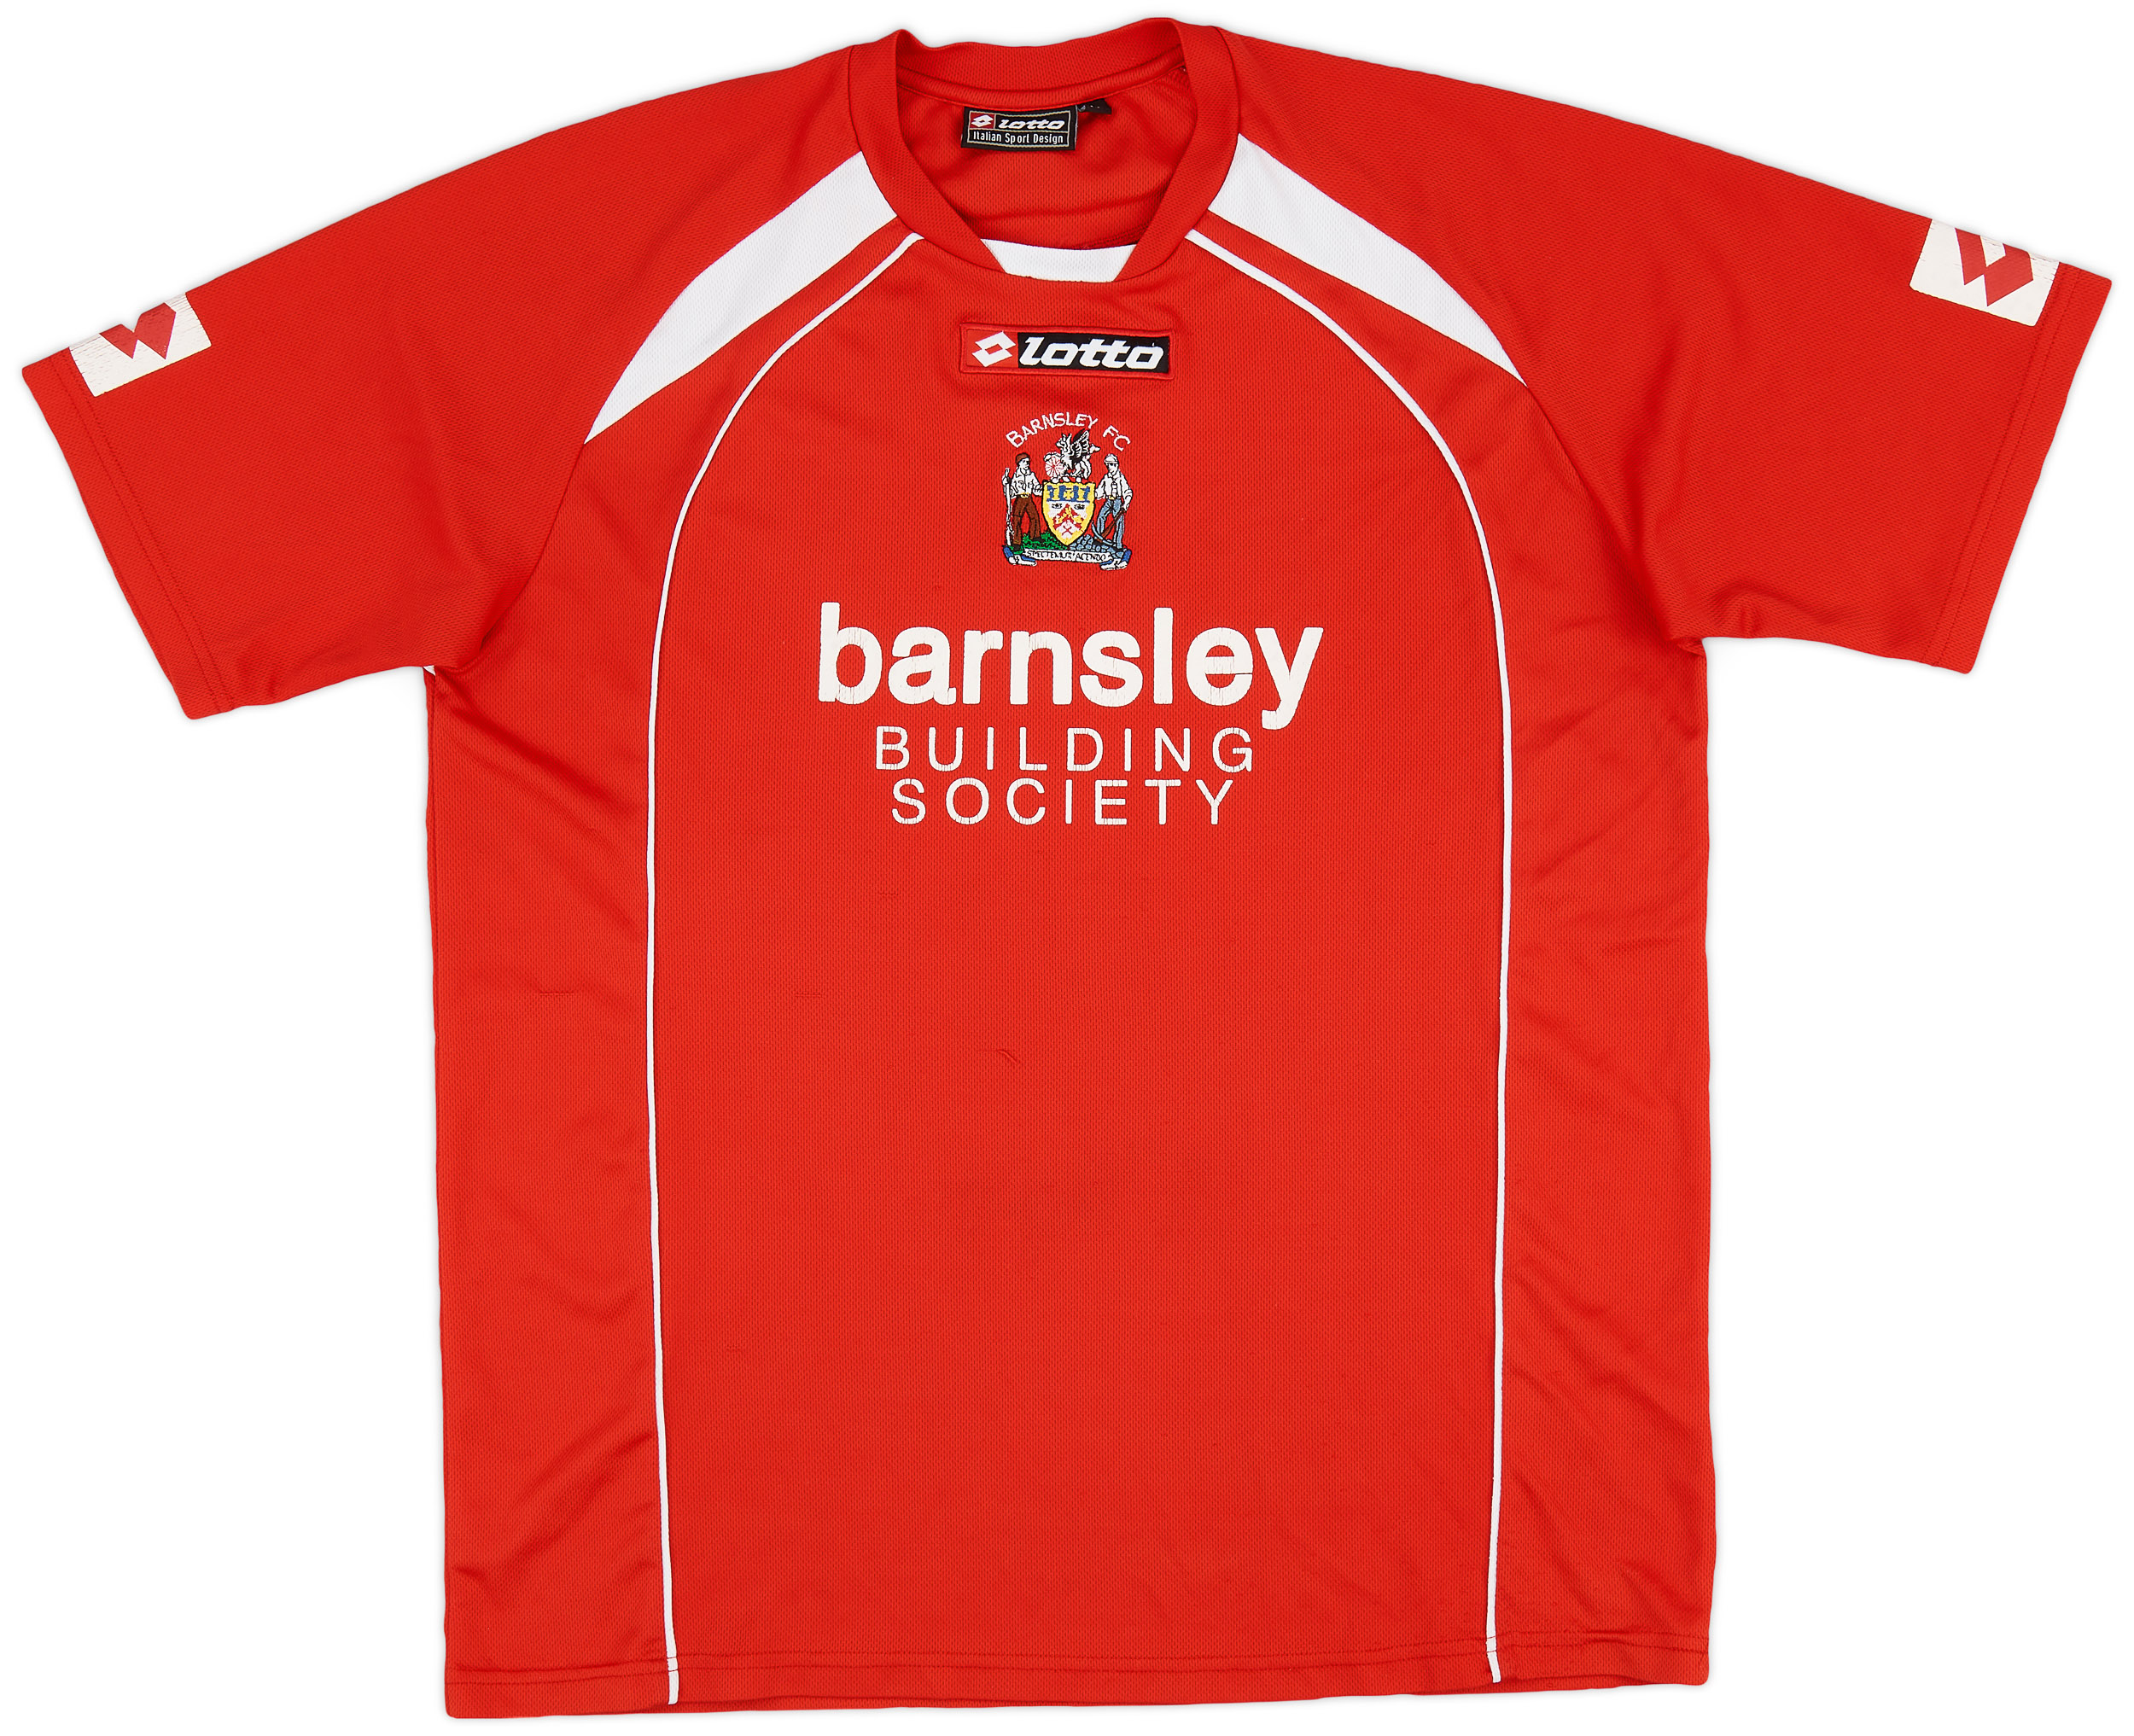 2008-09 Barnsley Home Shirt - 6/10 - ()